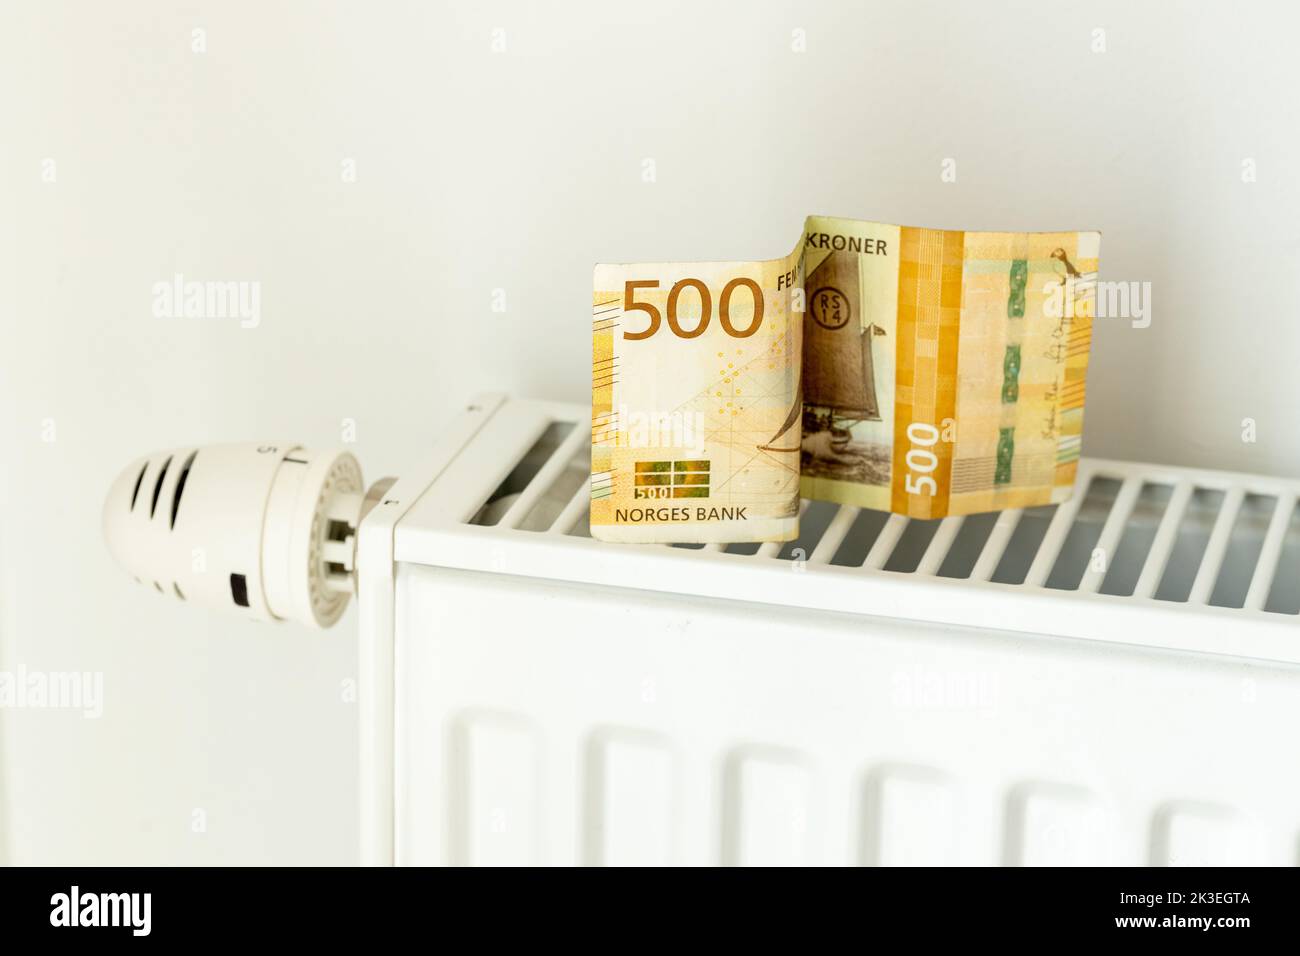 500 banconota NOK posta sul radiatore, il concetto di aumento dei prezzi dell'energia in Norvegia e di riscaldamento più costoso Foto Stock